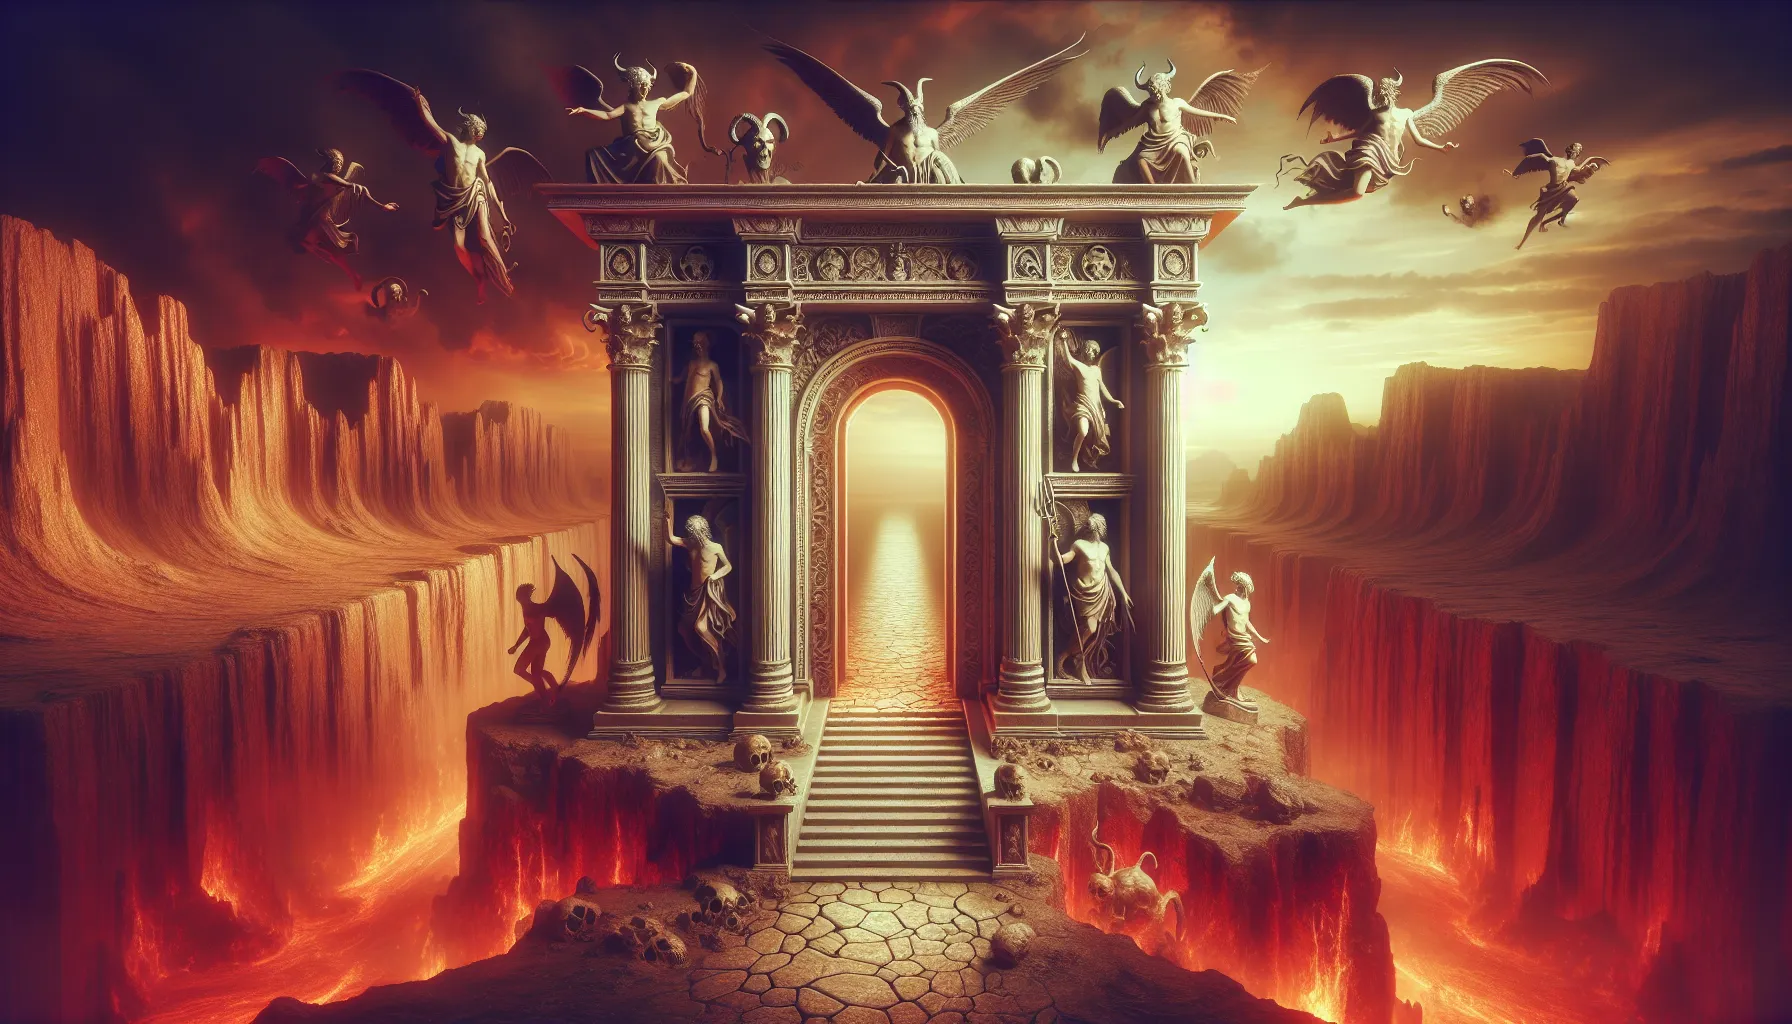 Representación simbólica de las Puertas del Infierno y del Hades en la iconografía cristiana y en la tradición mitológica.